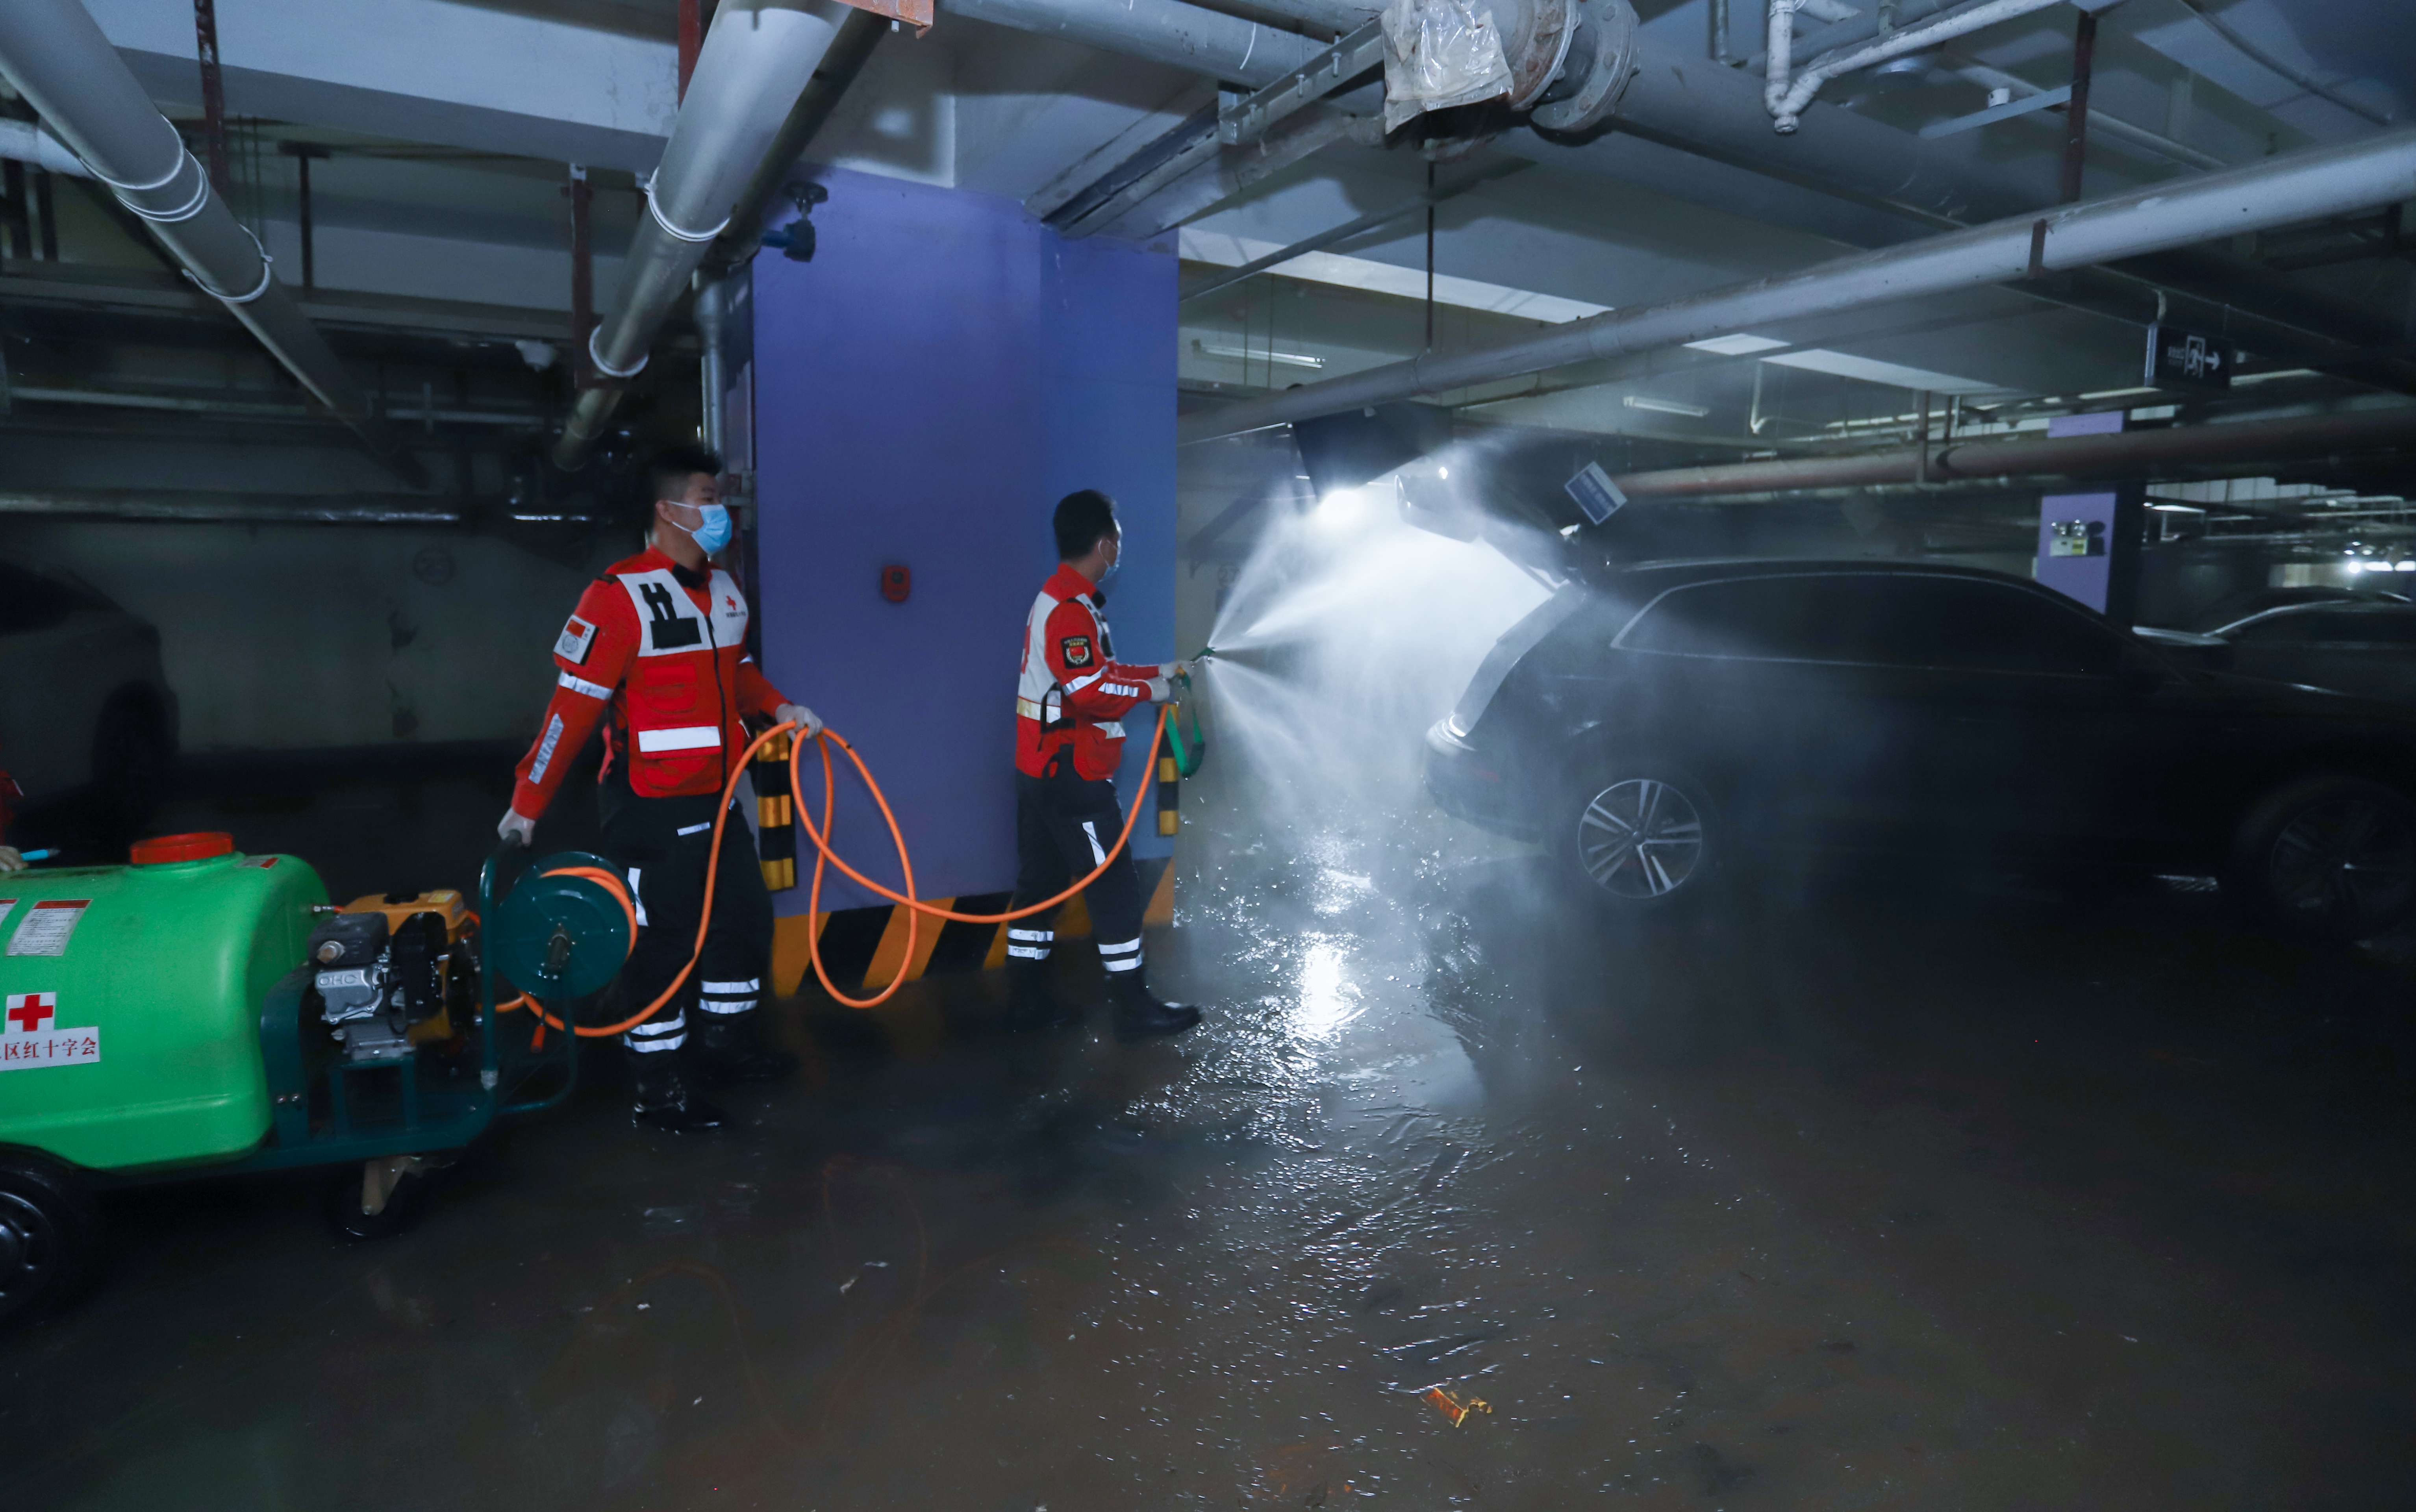 郑州市金水区红十字风马旗救援队在地下车库进行消杀处理。谭纪刚摄 中国红十字会供图